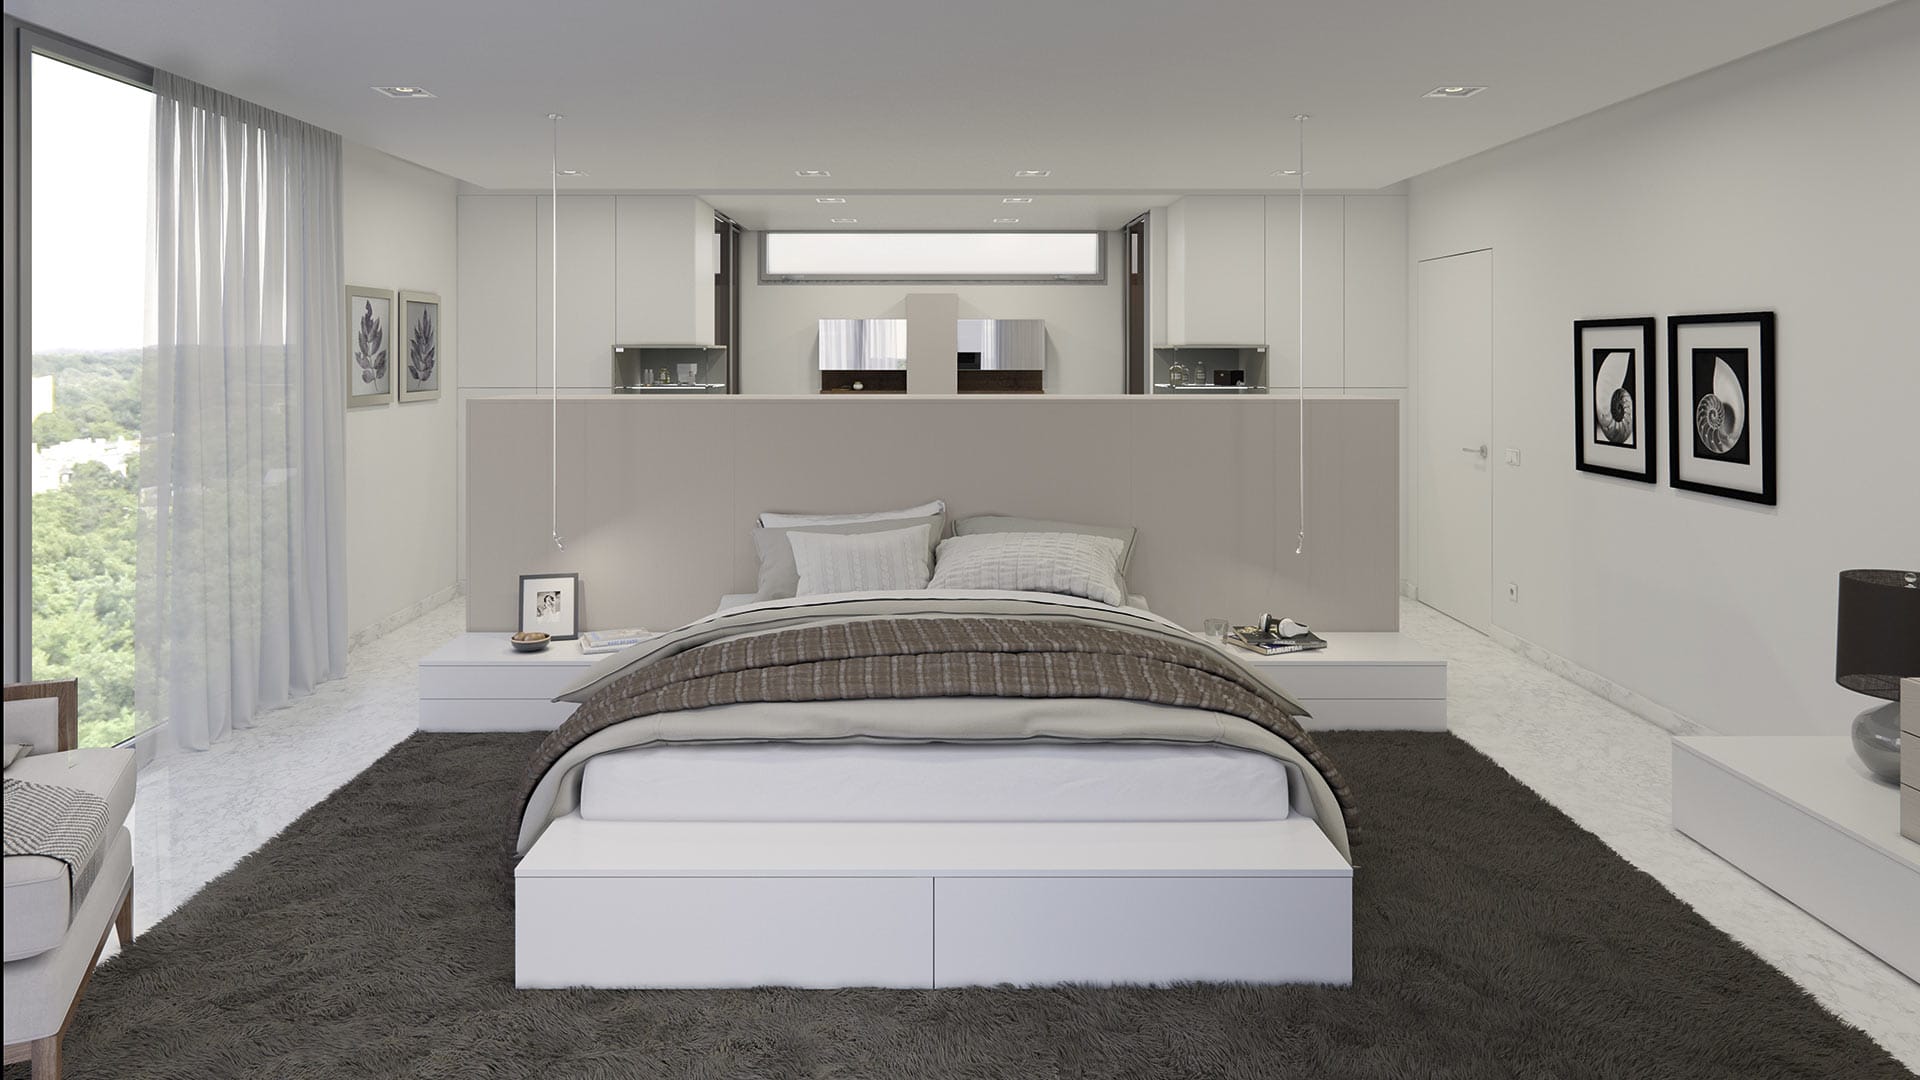 Espacioso y minimalista dormitorio en tonos claros con muebles acabados en poliester blanco mate y vestidor tras la cama de acabado laminado de madera fango